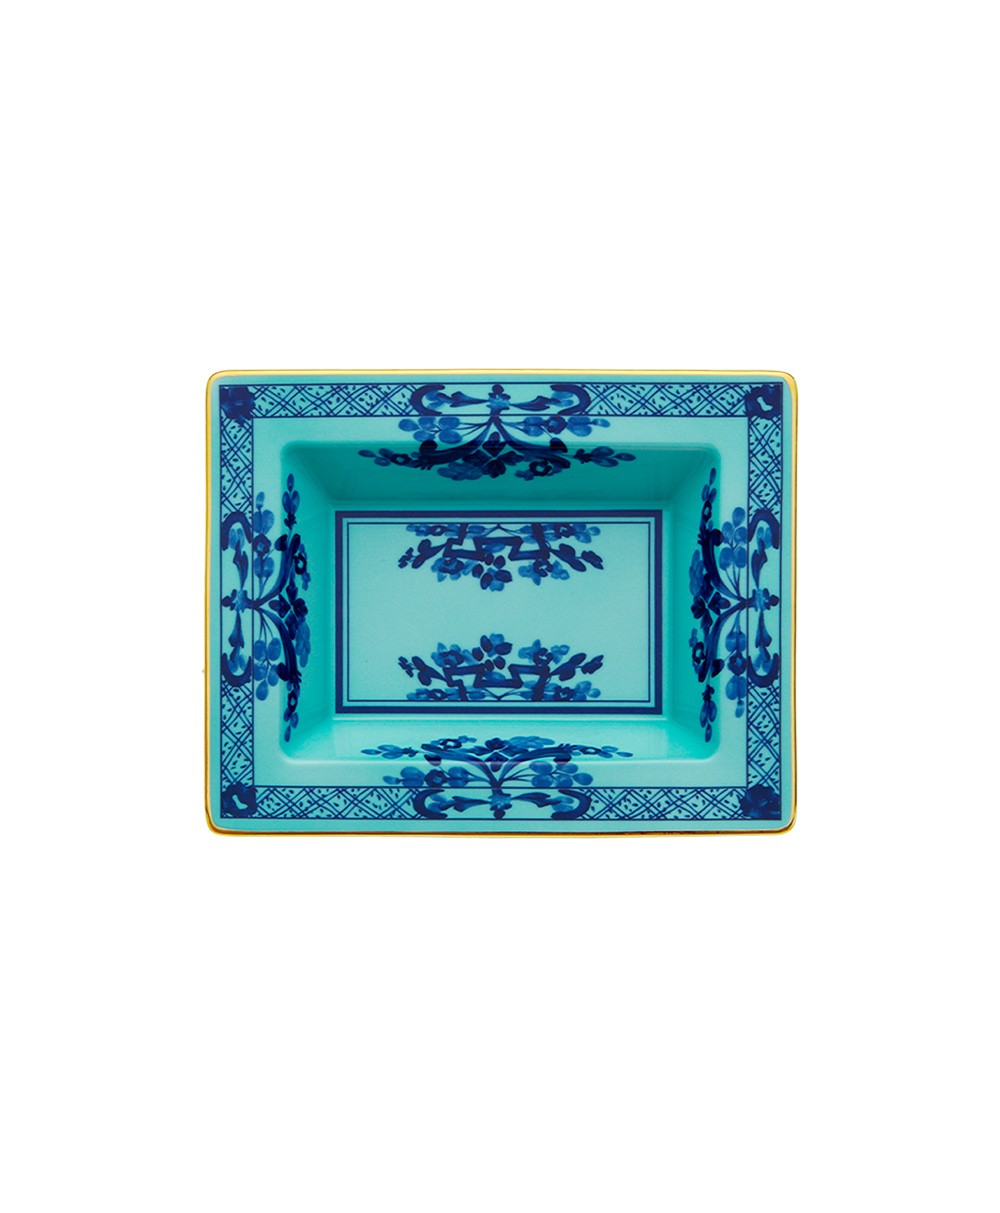 Produktbild "Oriente Iris Platte" von Ginori 1735 im RAUM Concept store